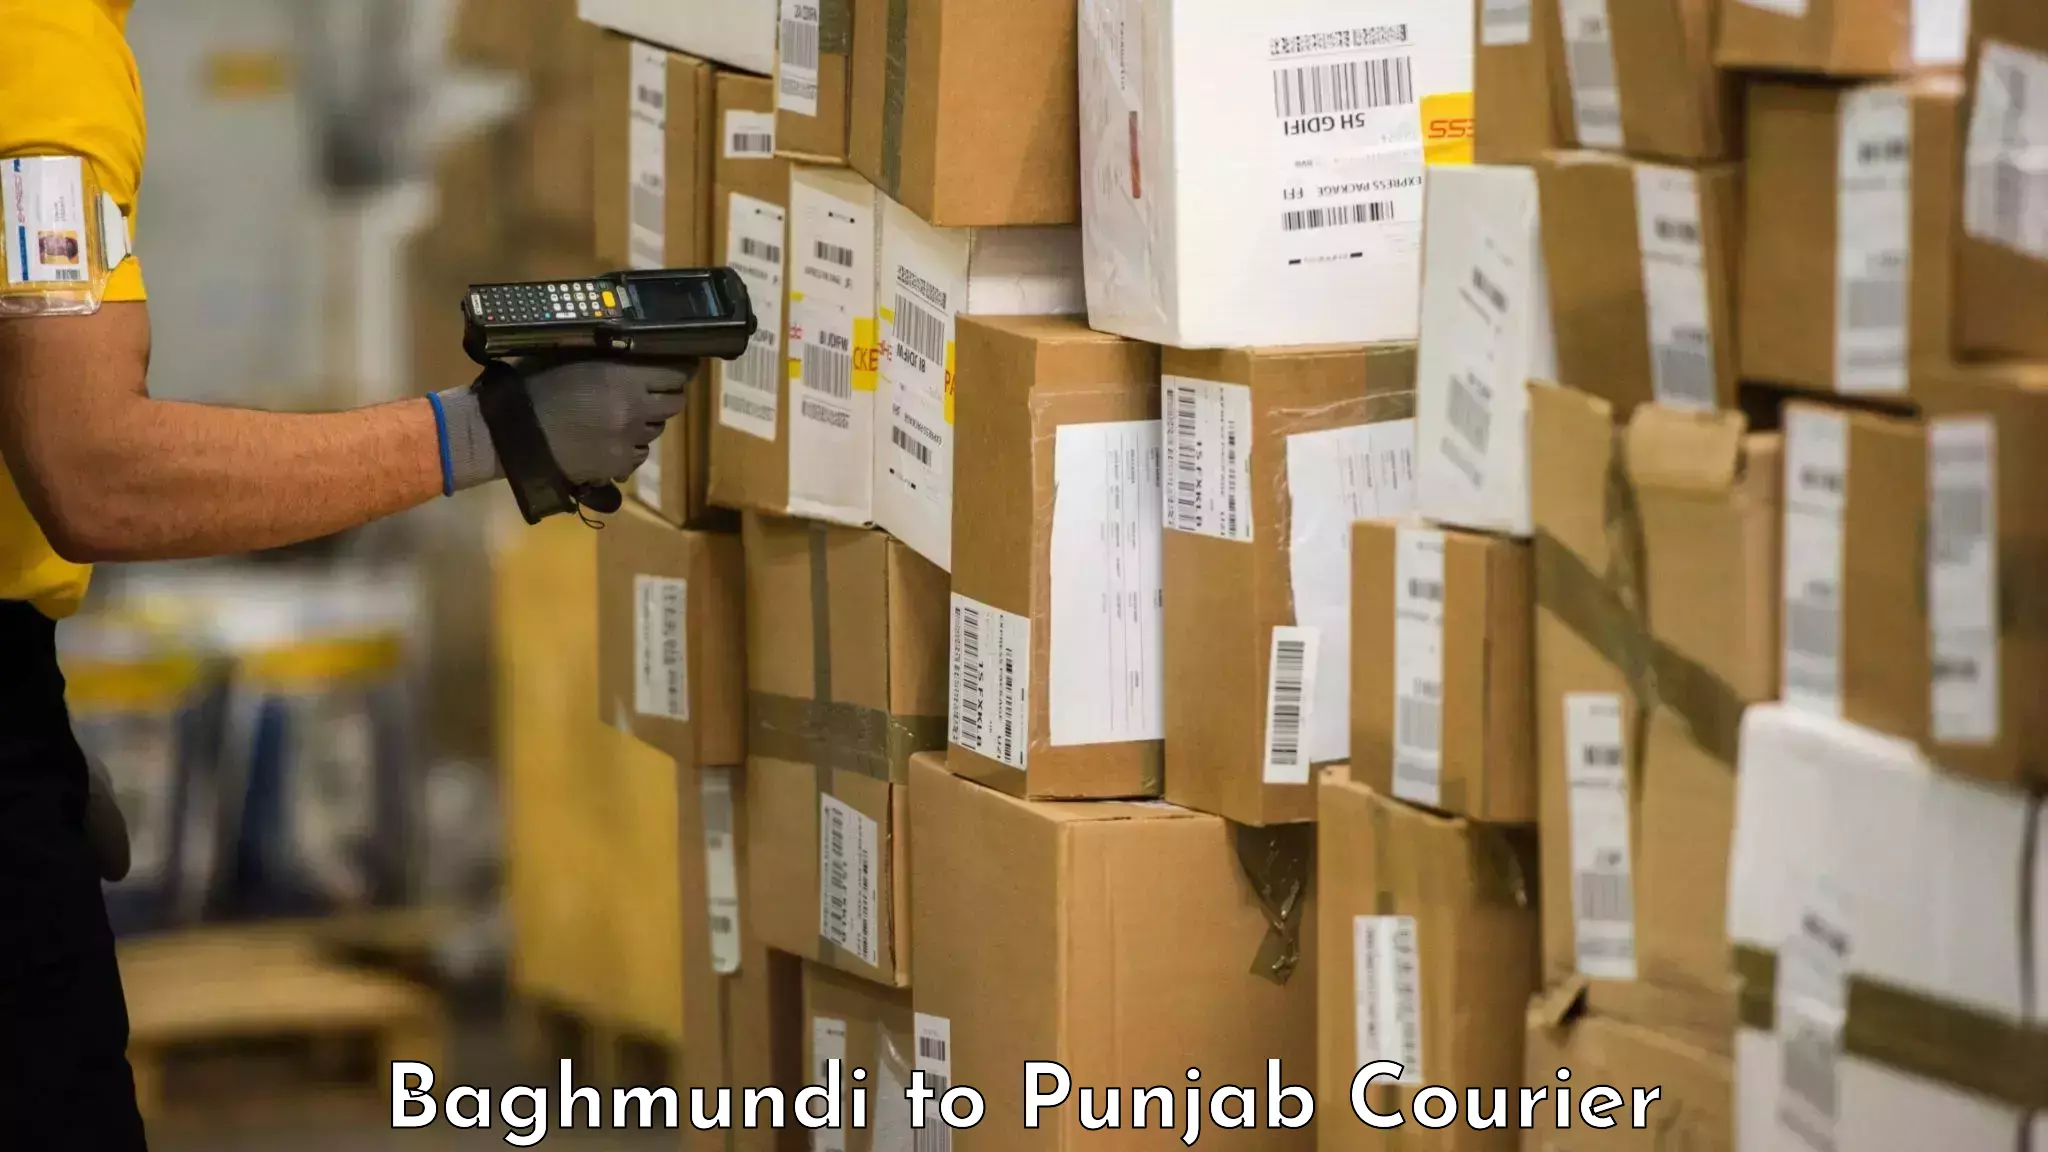 Baggage transport scheduler Baghmundi to Punjab